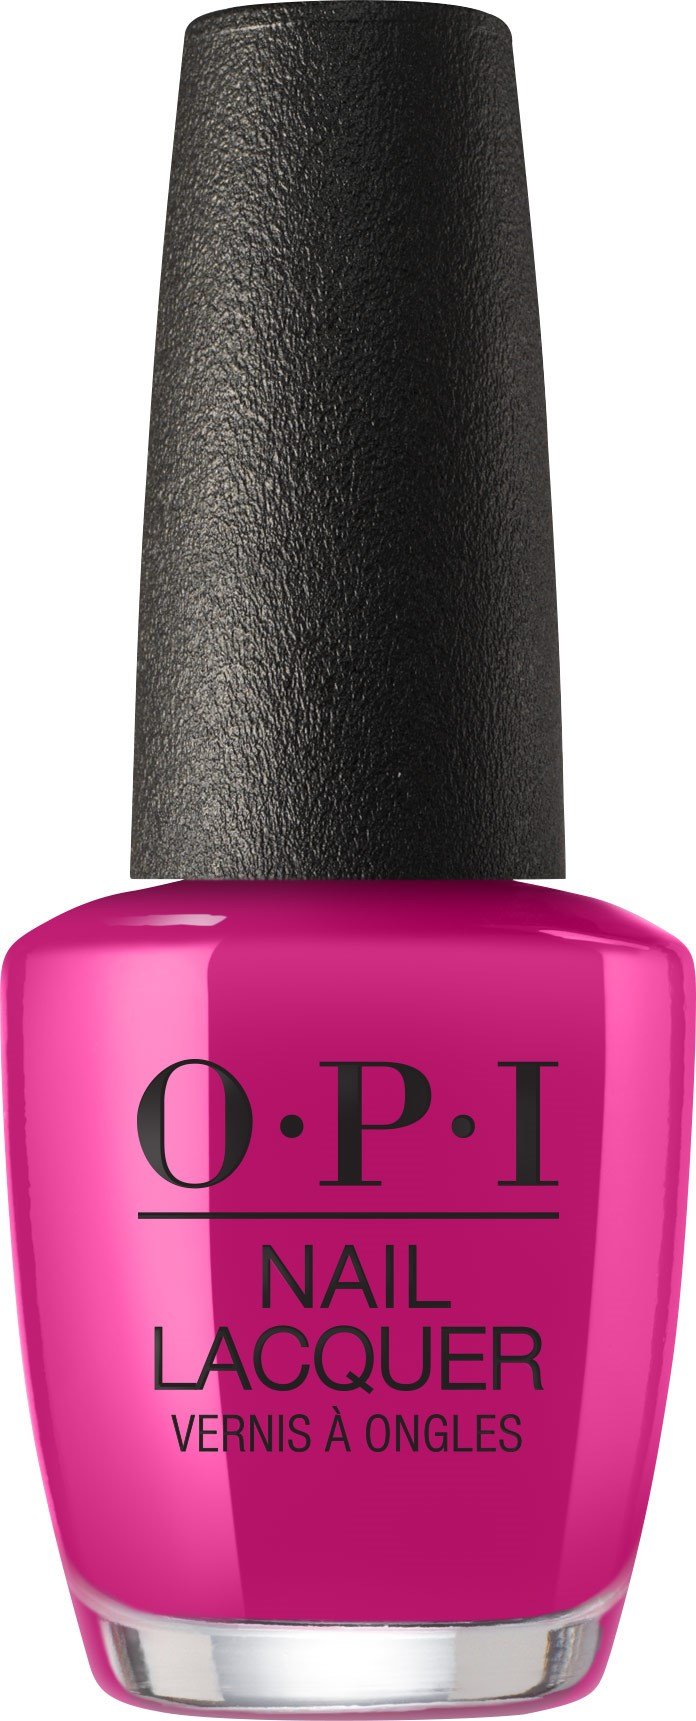 OPI Nail Lacquer - Hurry-juku Get this Color!